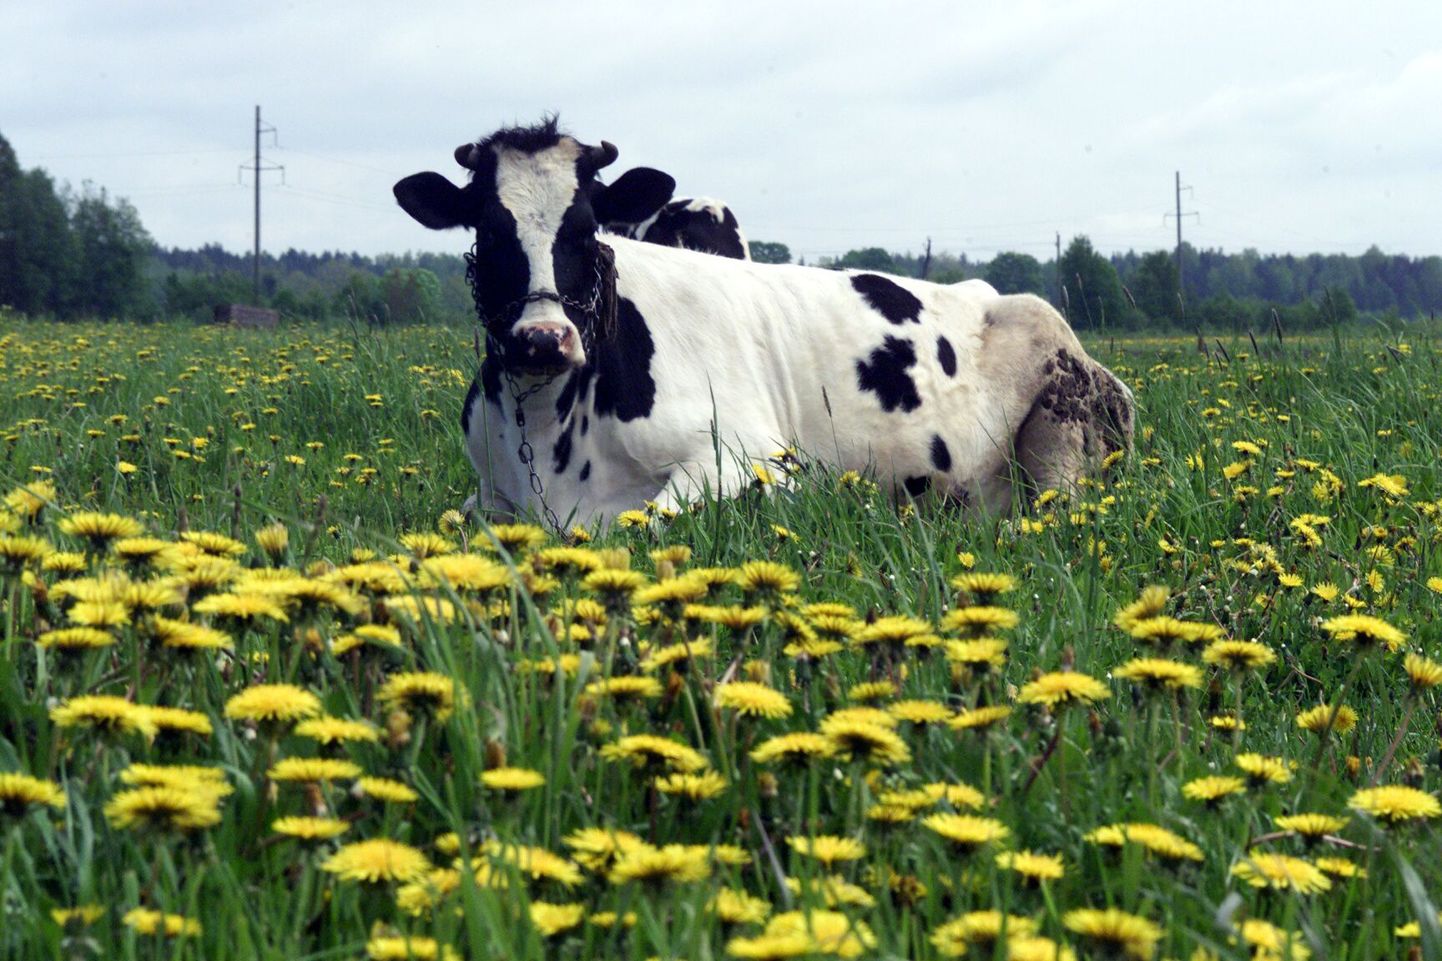 Eesti lehmadelt lüpstud toorpiimast kolmandik ehk päevas kuni 600 tonni viiakse praegu Lätti ja Leetu, kus siis lõunanaabrid piimale lisandväärtust andes sellelt suuremat raha teenivad. Uus piimatööstus peaks osa sellest rahast eestlastele jätma.